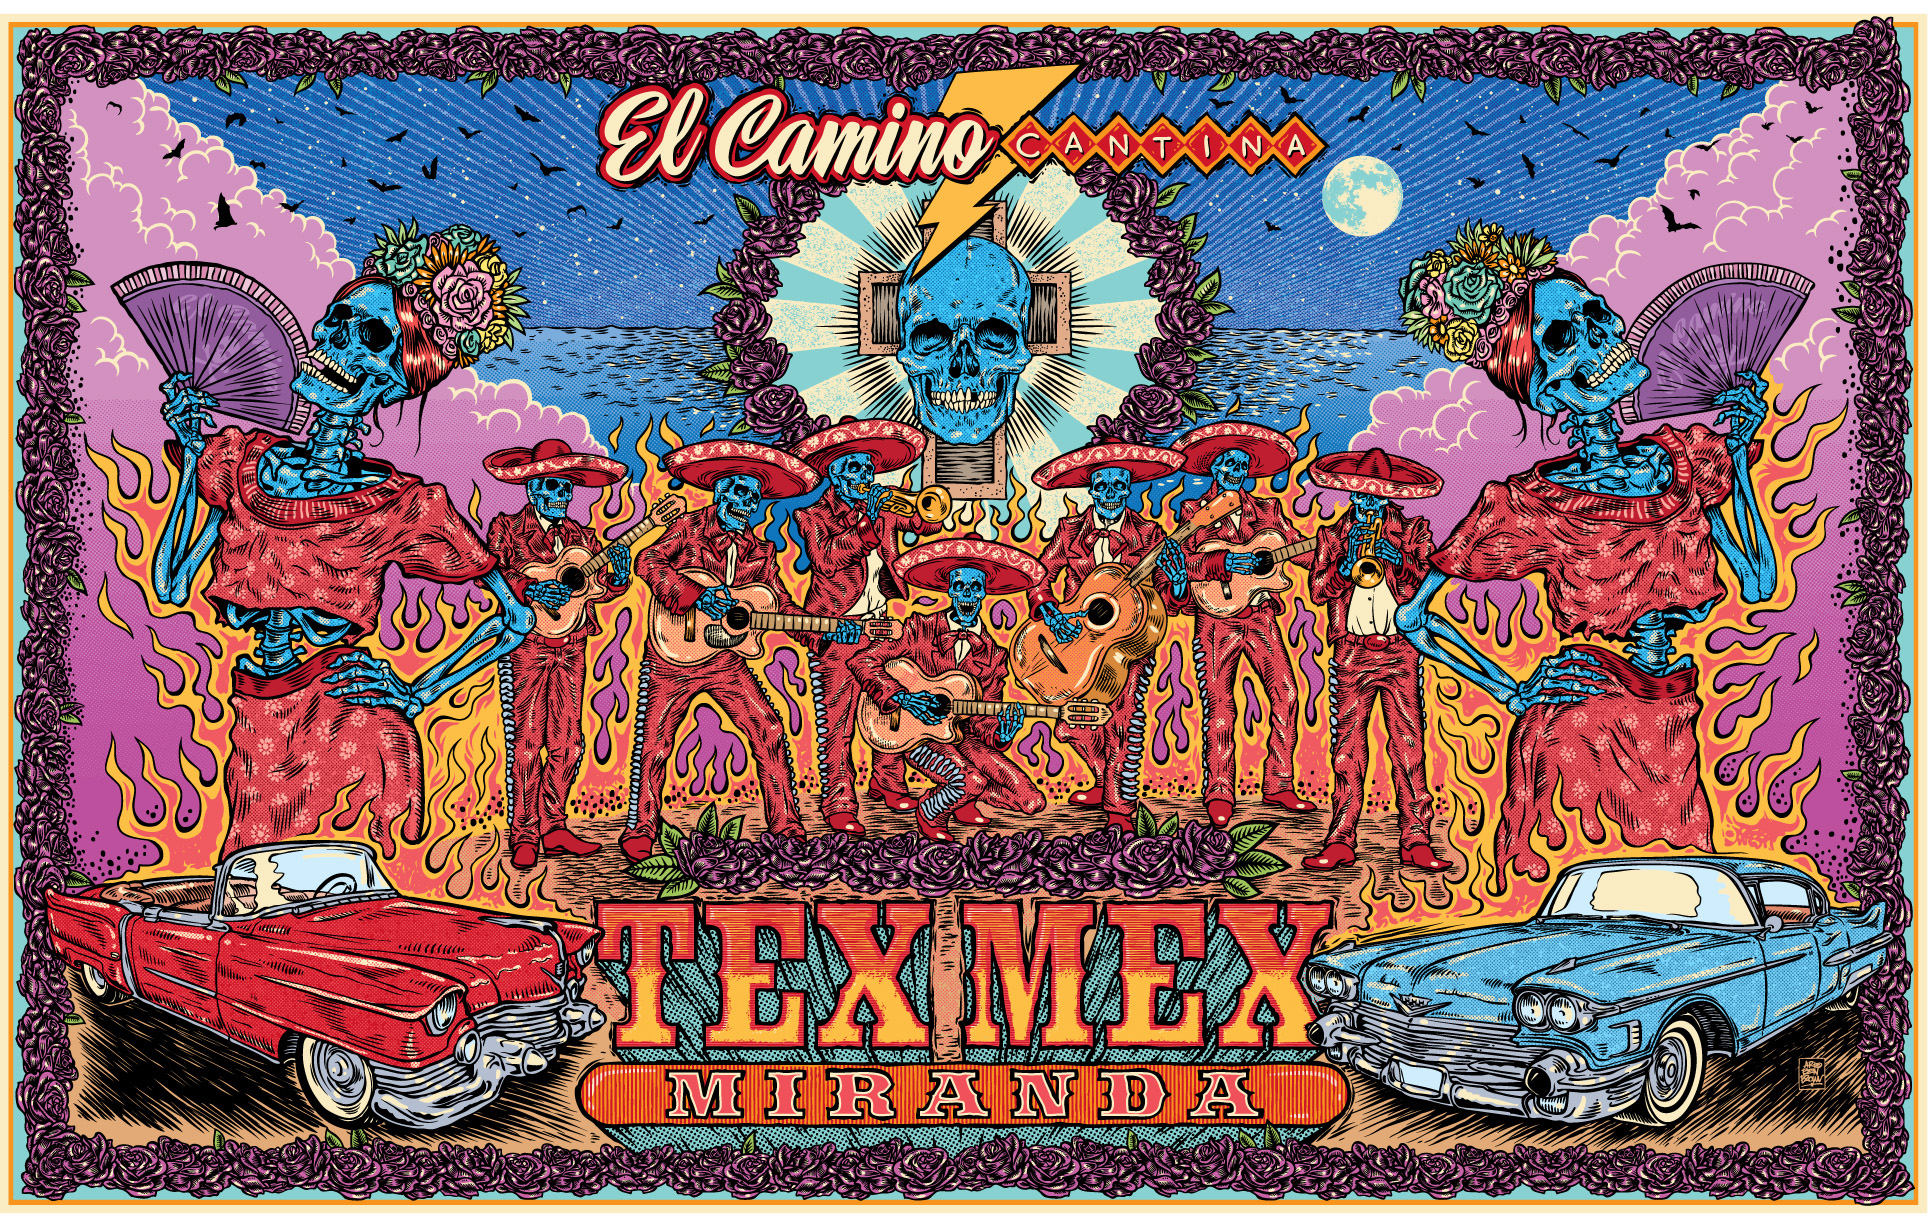 El Camino Cantina brings a taste of true Tex-Mex to Westfield Miranda